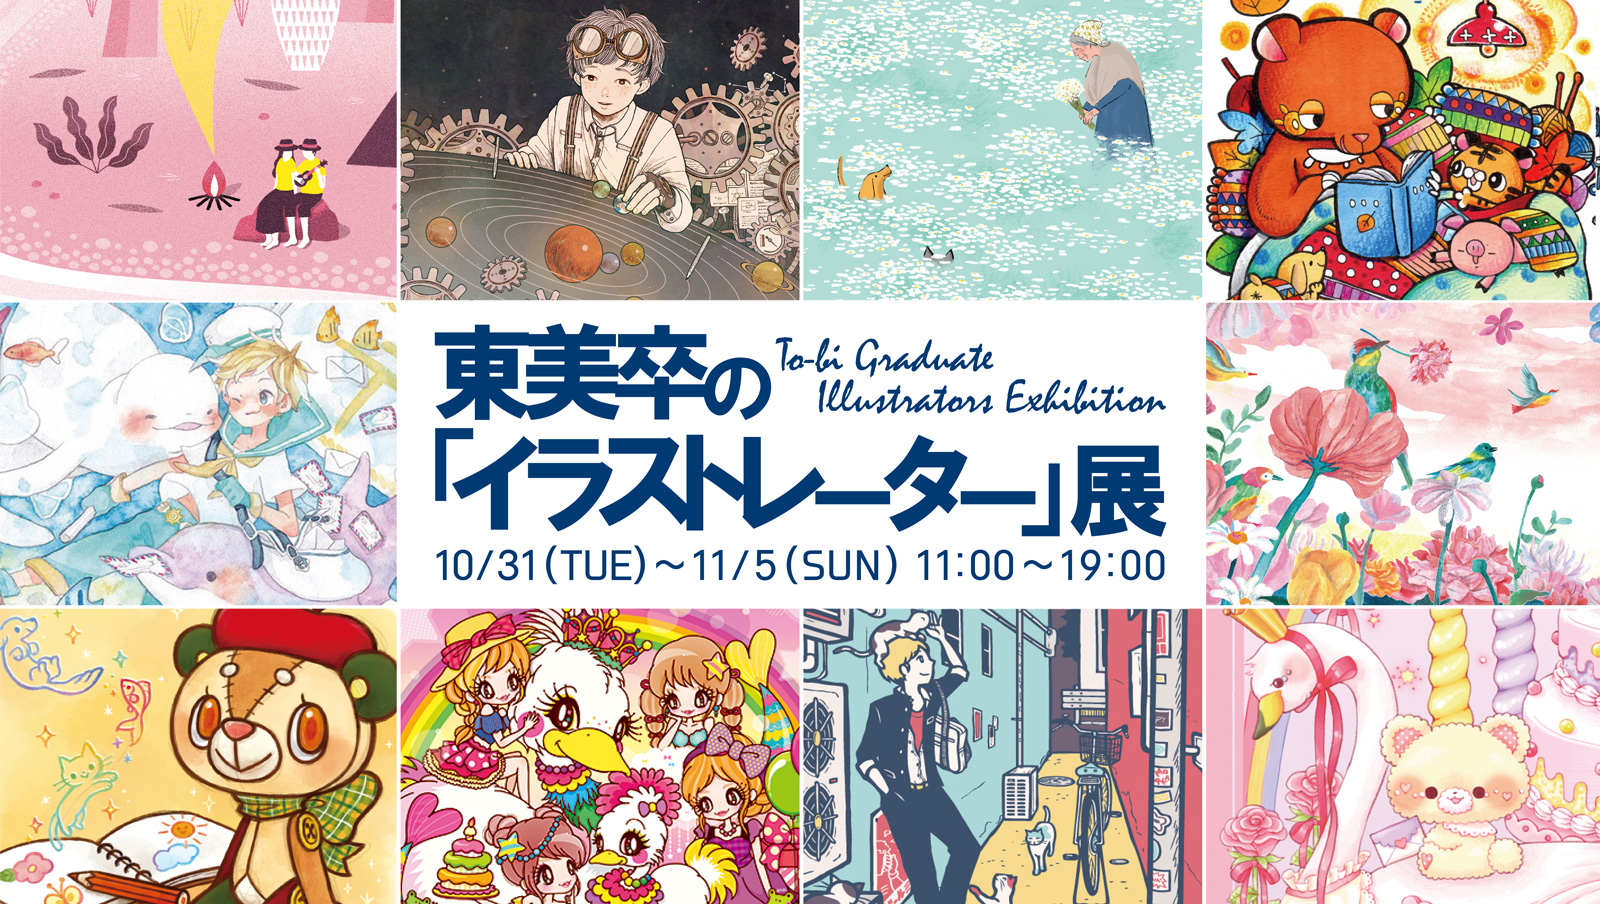 イベント告知 東美卒の イラストレーター 展を表参道のアート